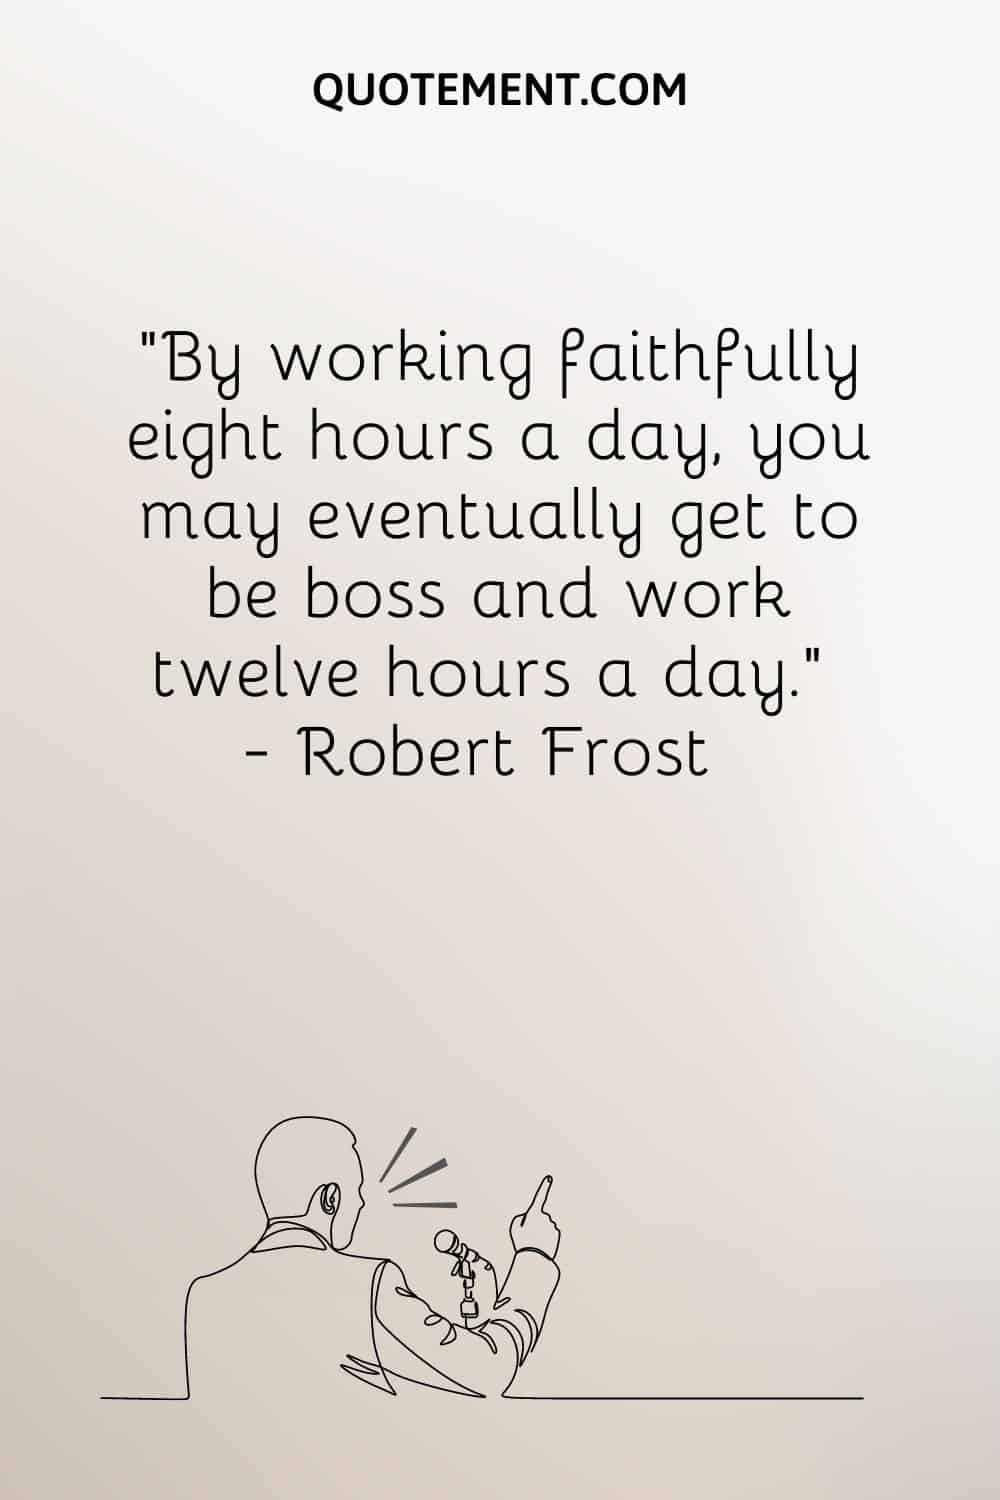 Trabajando fielmente ocho horas al día, puede que con el tiempo llegues a ser jefe y trabajes doce horas diarias